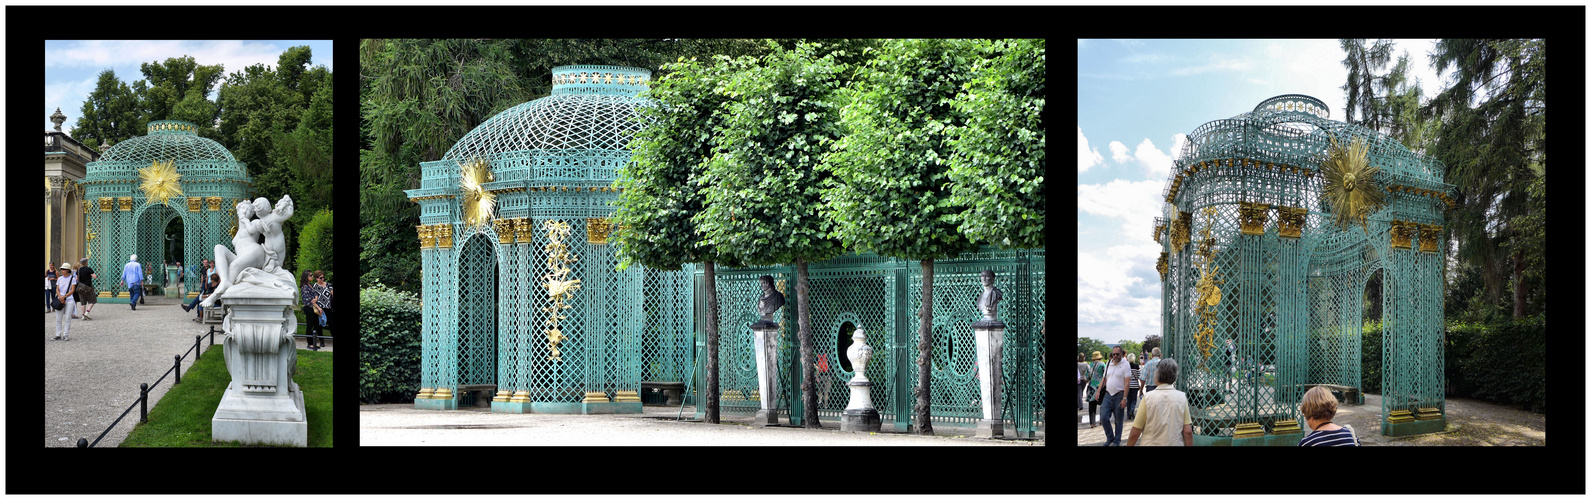 Filigrane Pavillons am Schloss Sanssouci